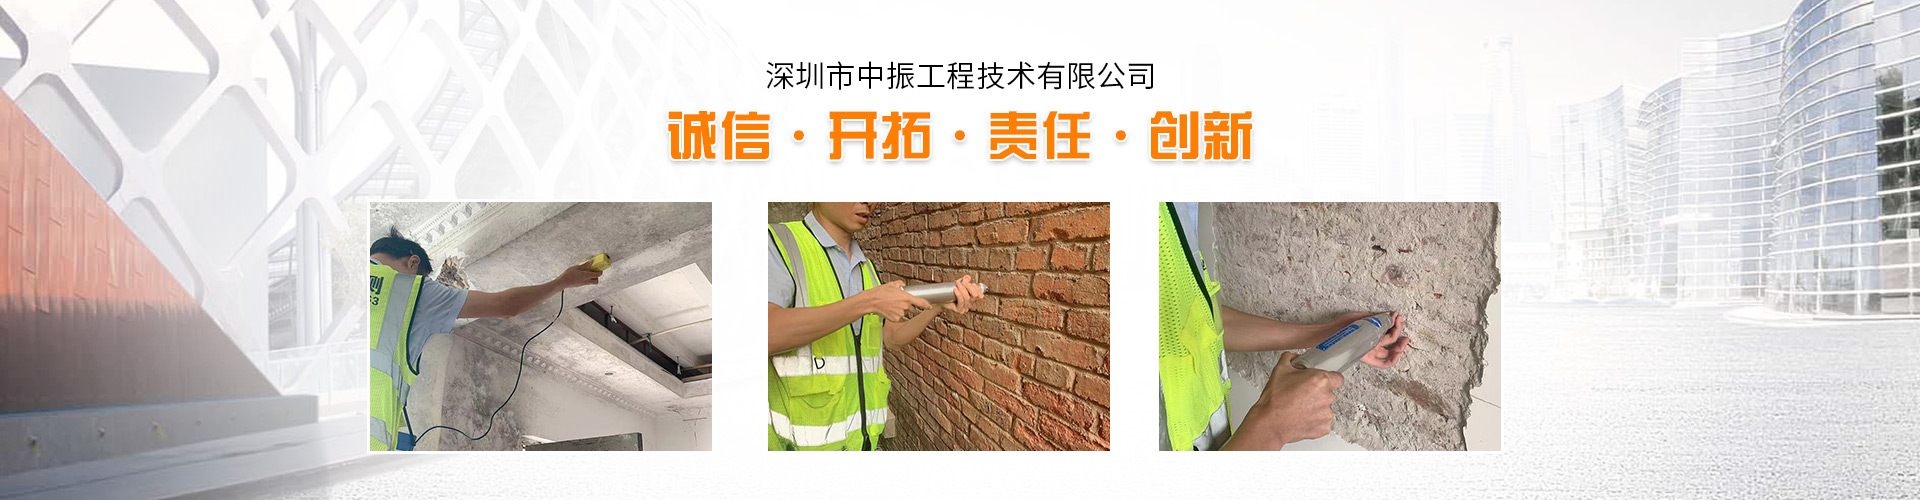 办理惠州市房屋房产证需要的房屋安全检测鉴定报告